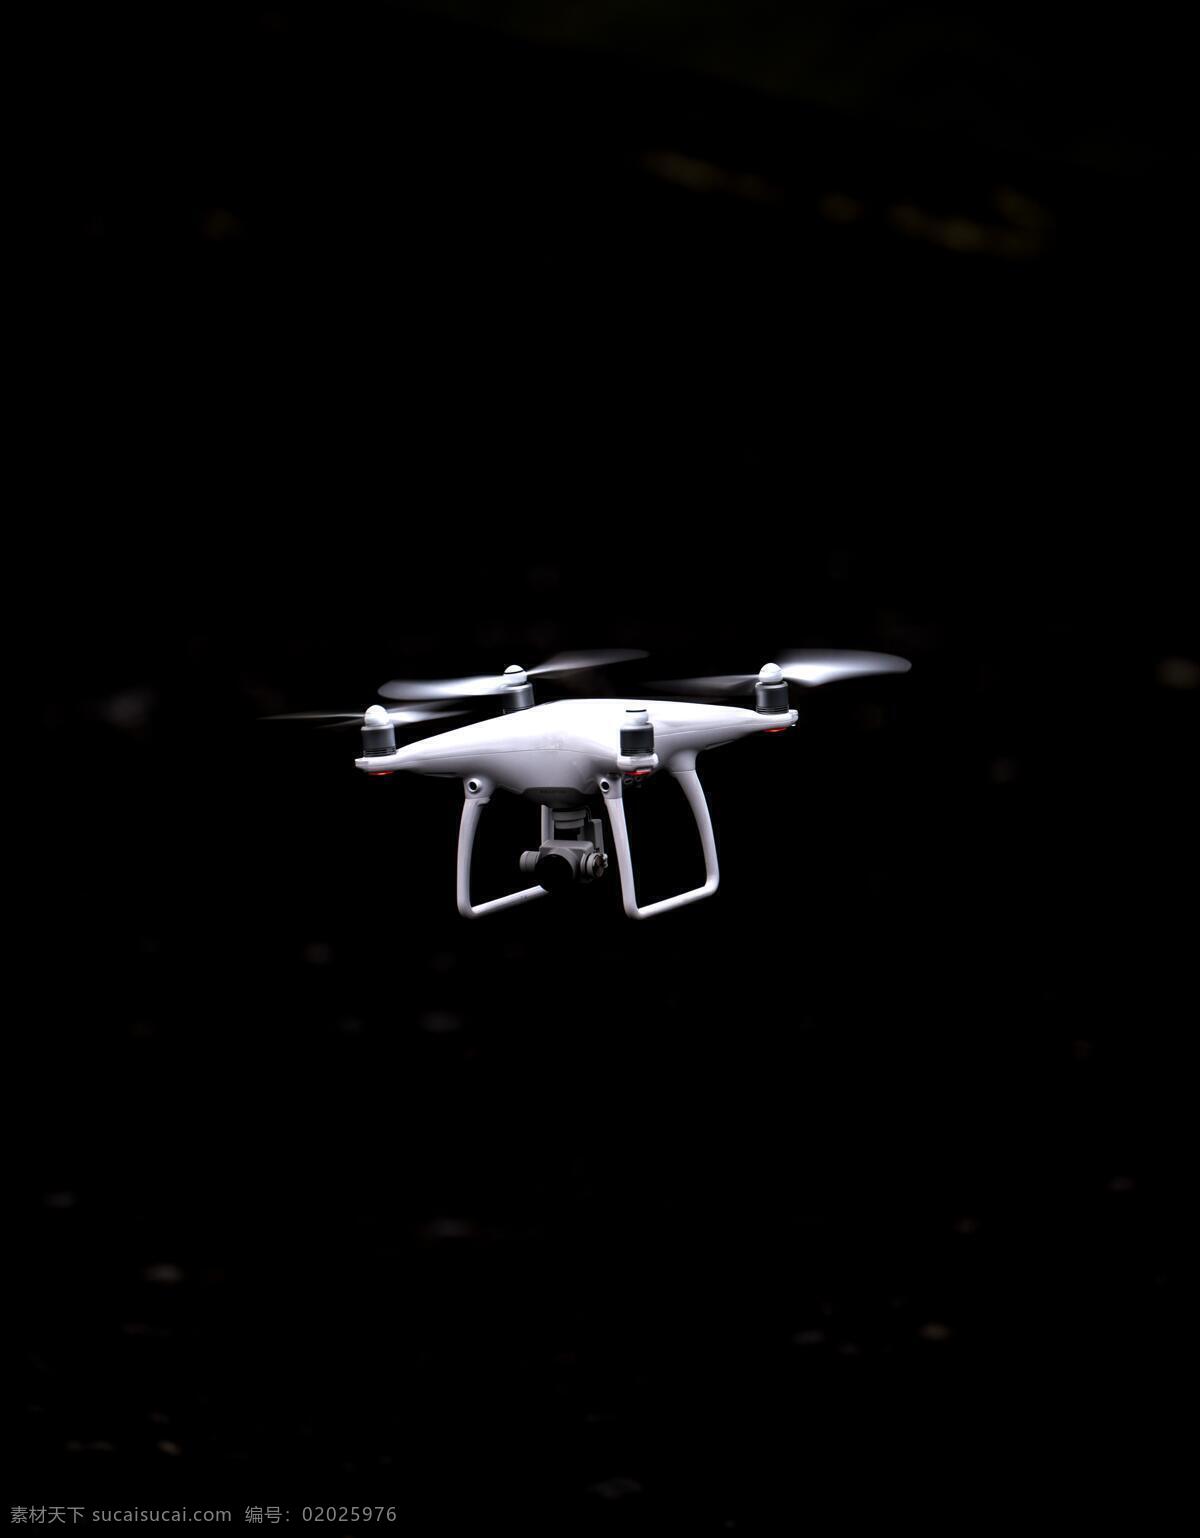 无人机 飞行 飞行器 飞机 悬停 飞行状态 黑色 背景 现代科技